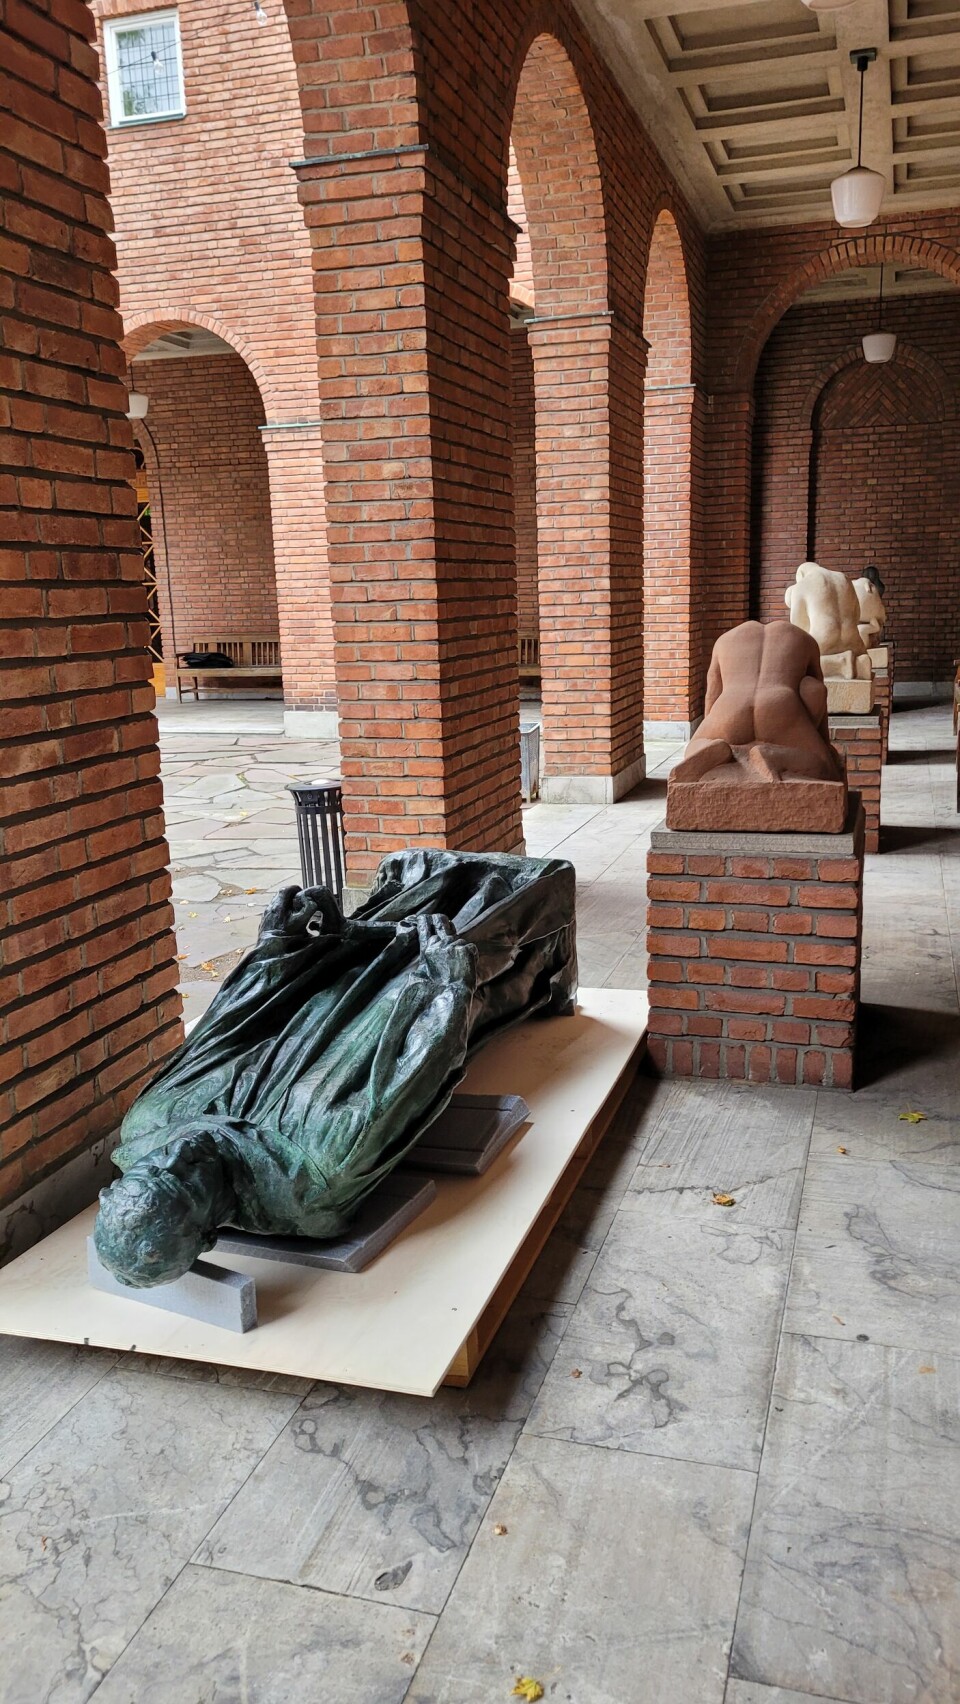 Rodinskulpturen klargjøres for transport tilbake til Solli plass I borggården i VIgelandmuseet. Foto: Lily Vikki / Oslo kommune